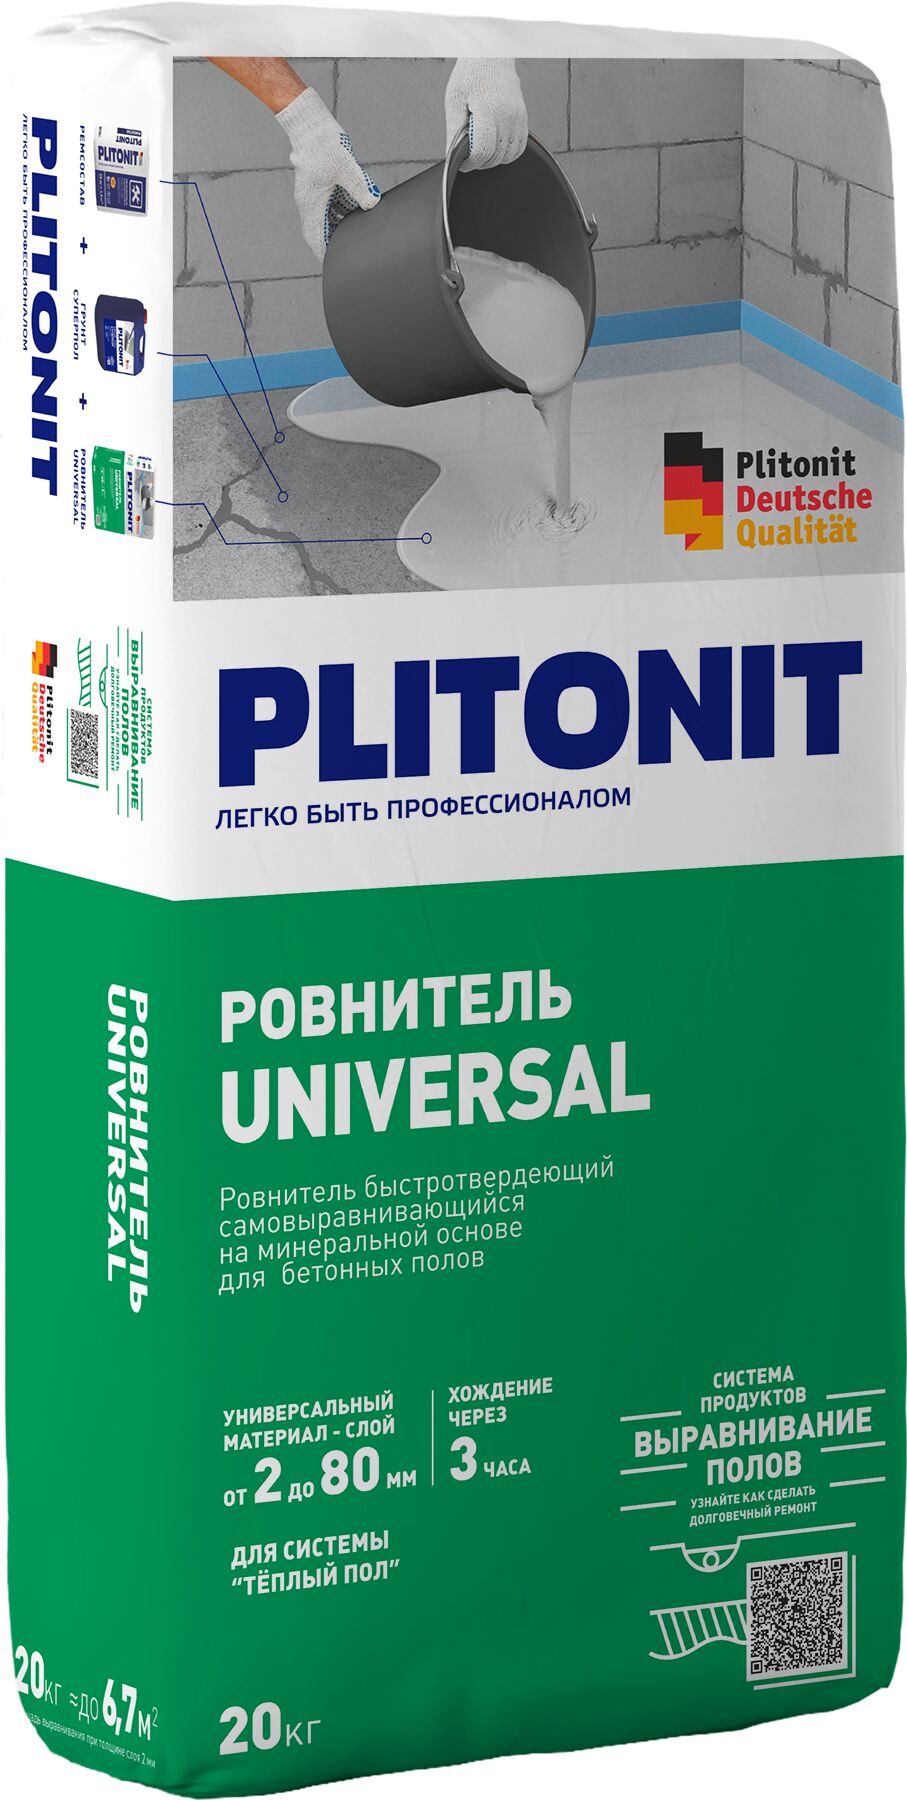 PLITONIT Universal -20 ровнитель быстротвердеющий, самовыравнивающийся, для грубого и финишного выравнивания , PLITONIT Universal -20 ровнитель быстротвердеющий, самовыравнивающийся, для грубого и финишного выравнивания 